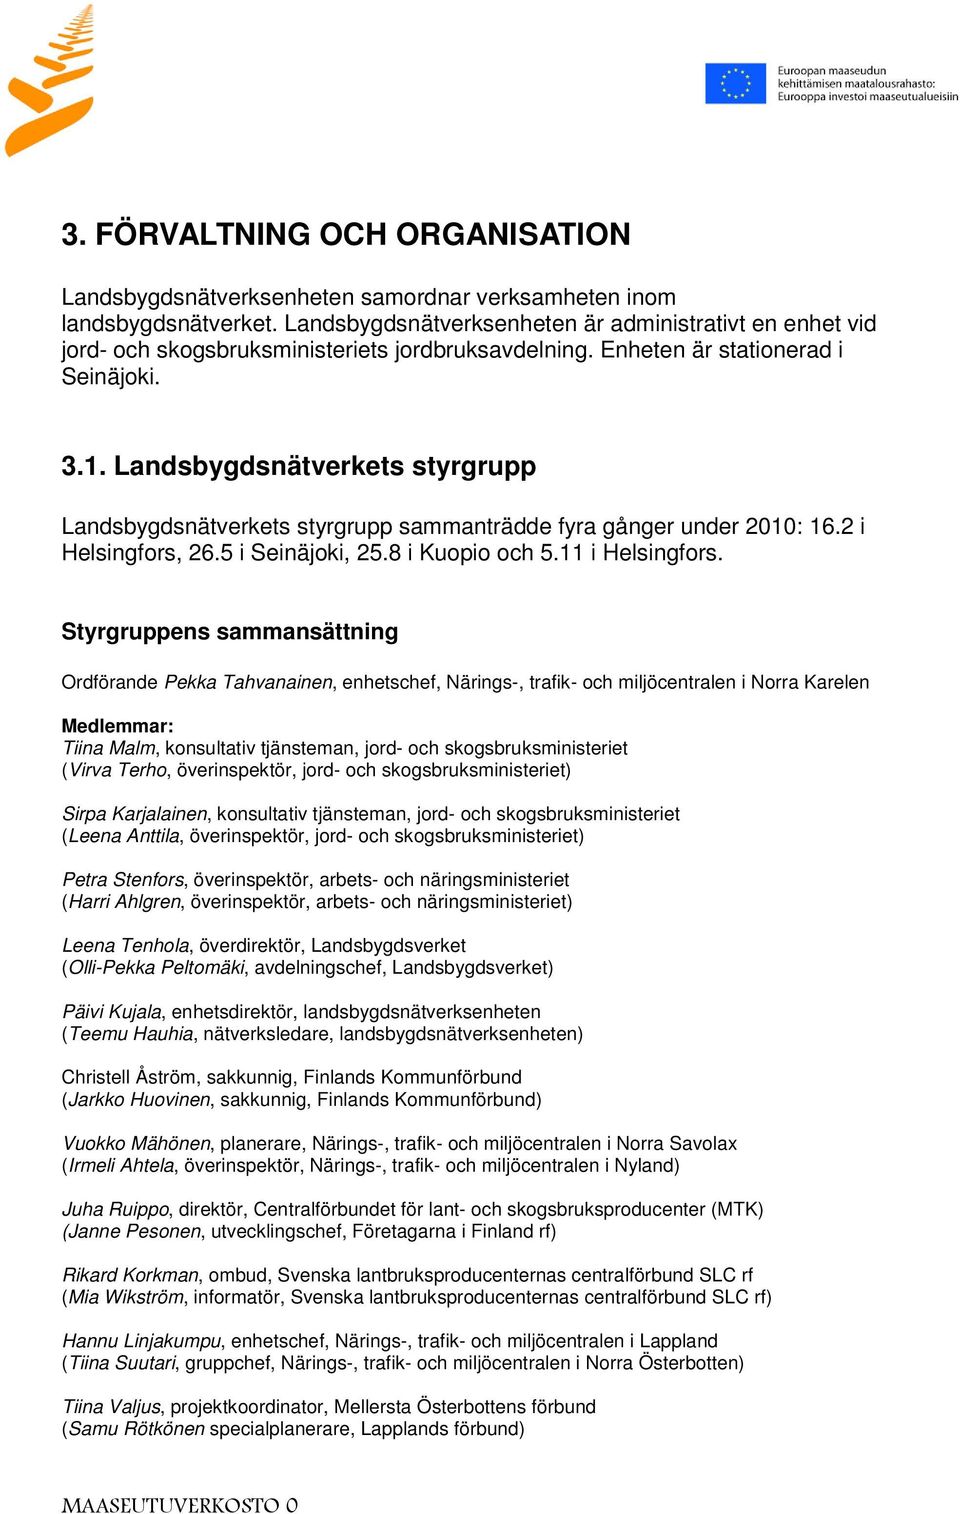 Landsbygdsnätverkets styrgrupp Landsbygdsnätverkets styrgrupp sammanträdde fyra gånger under 2010: 16.2 i Helsingfors, 26.5 i Seinäjoki, 25.8 i Kuopio och 5.11 i Helsingfors.